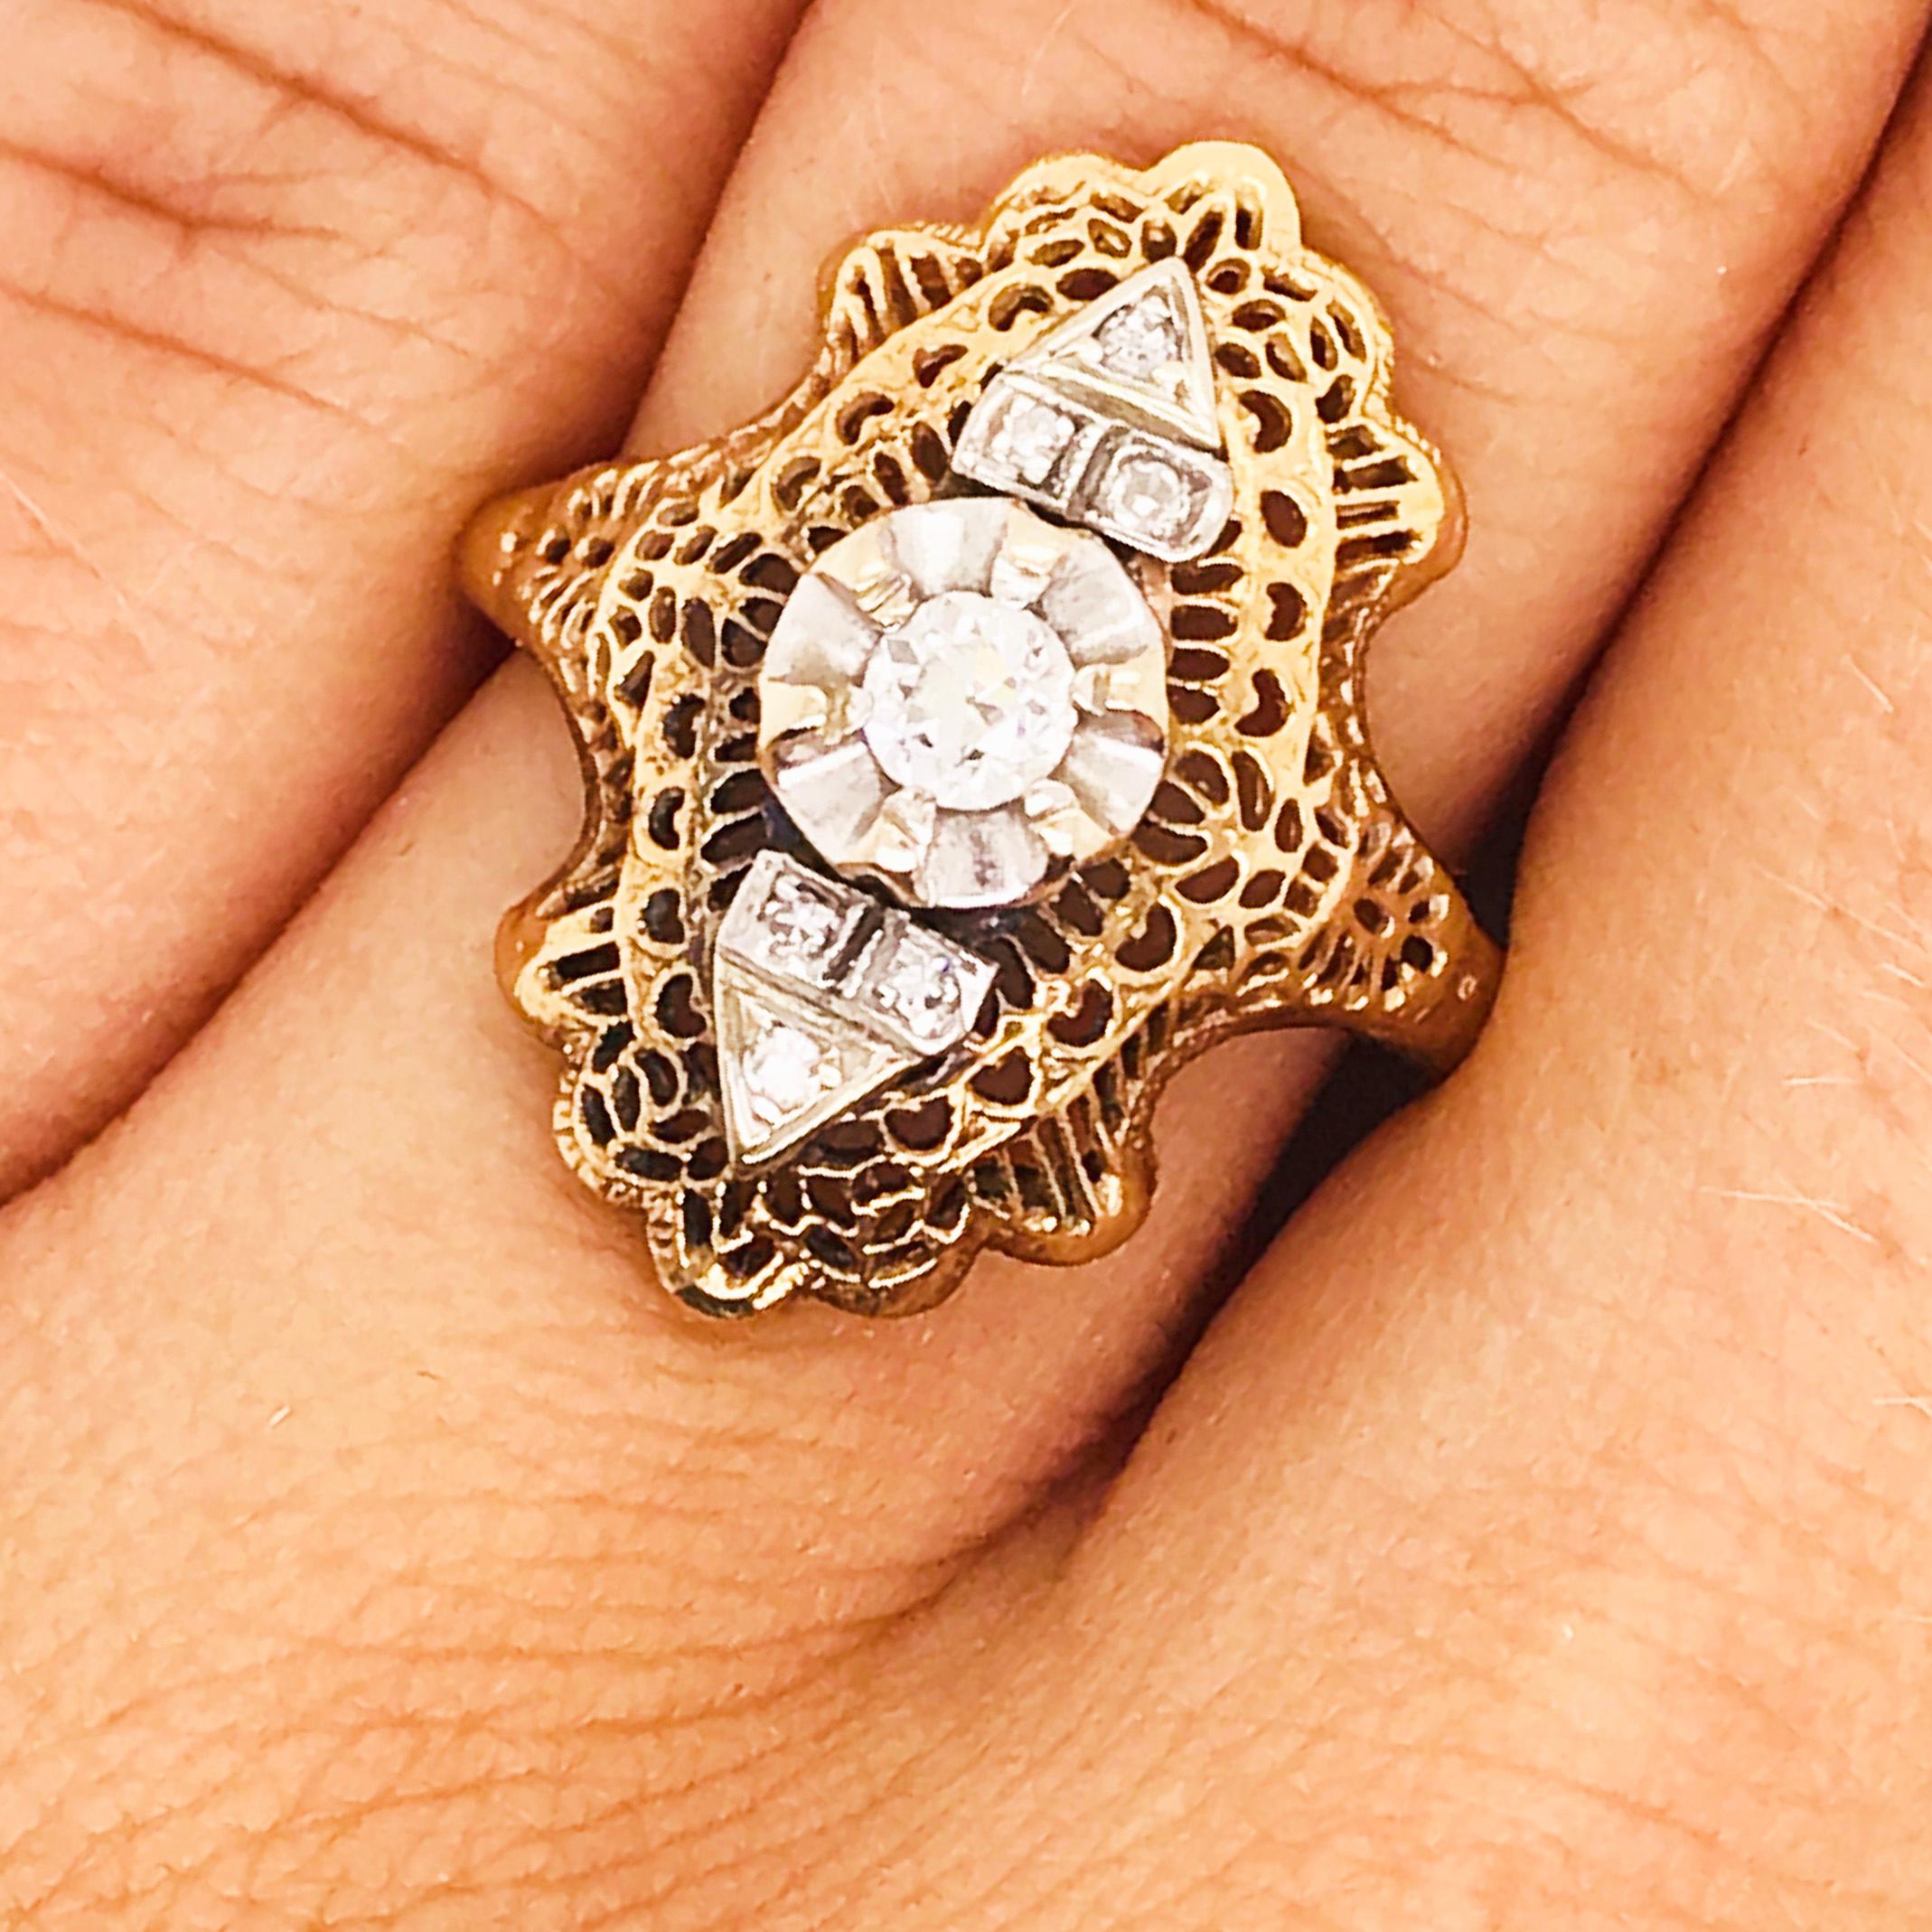 Art Nouveau Diamond Filigree Estate Ring 14 Karat Yellow Gold 0.21 Carat Diamond Ring